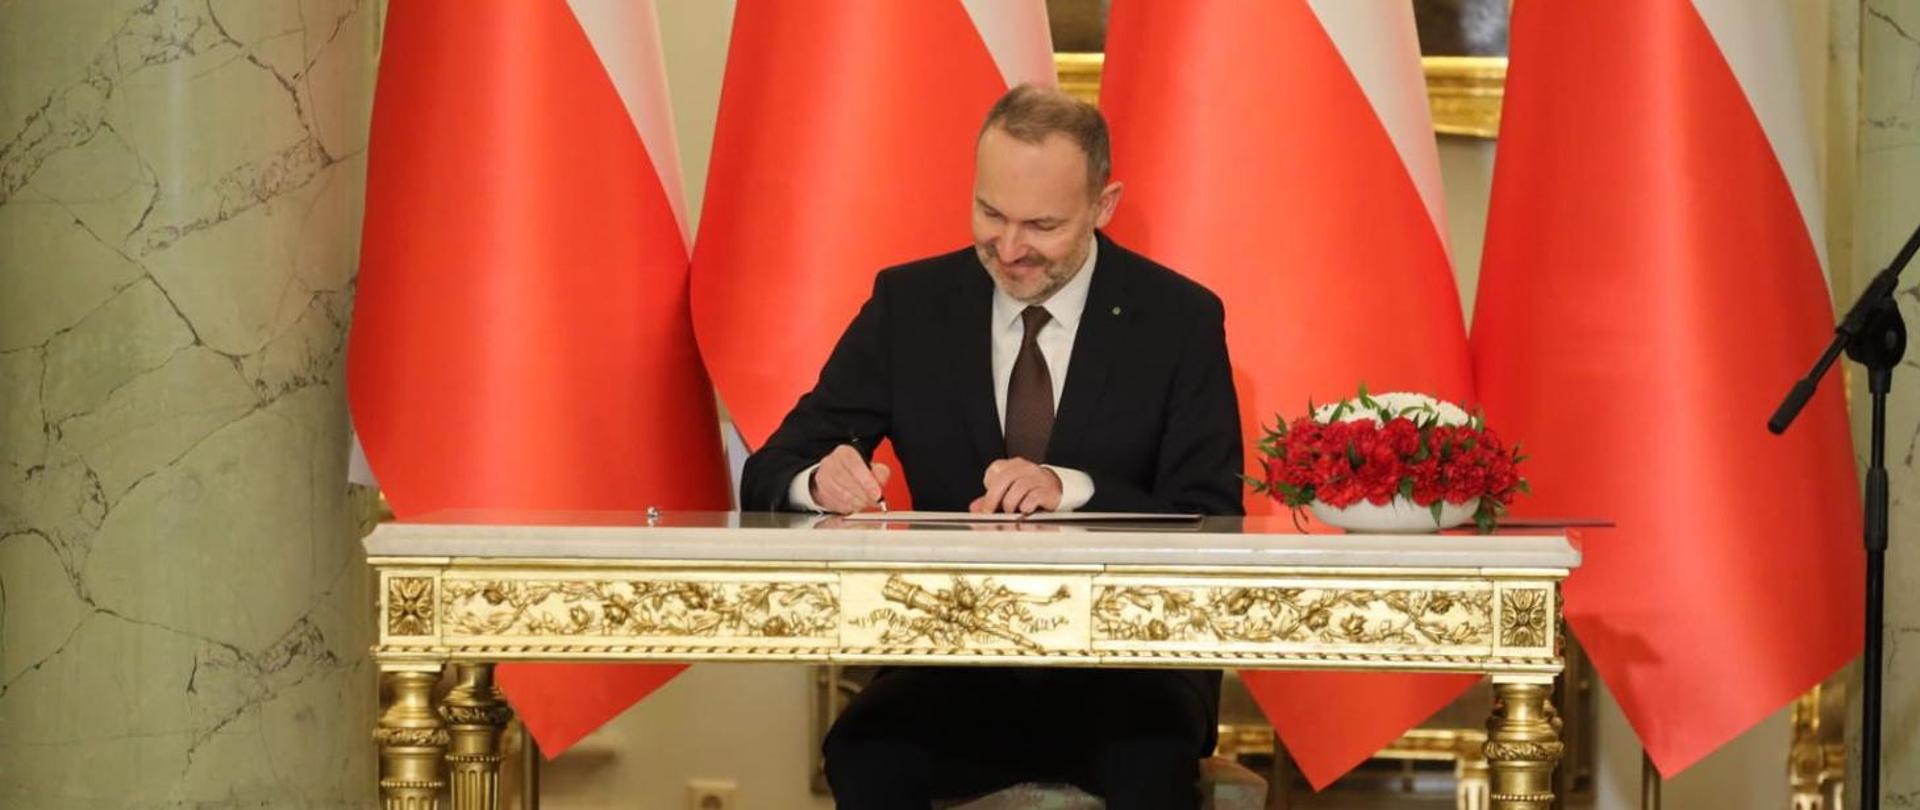 Na zdjęciu widać ministra Krzysztofa Hetmana, który podpisuje akt powołania na ministra. Minister siedzi przy stole na którym po prawej stronie stoją biało czerwone kwiaty. W tle flagi Polski.